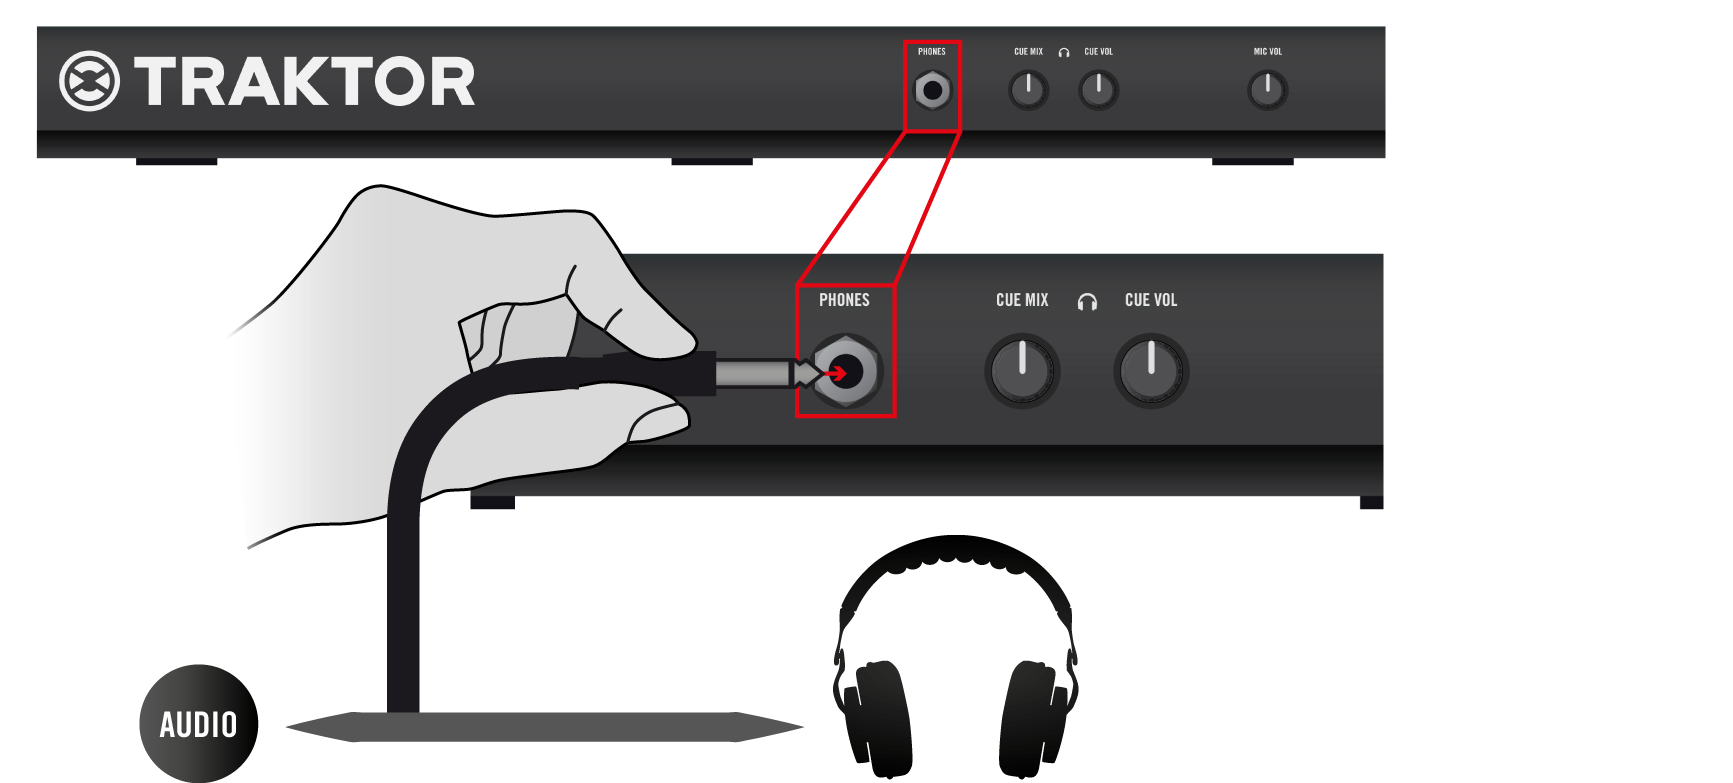 Anhang A - Typische Setups TRAKTOR KONTROL S4 Allgemeines Setup Anschließen des Kopfhörers an der Kopfhörerbuchse (Vorderseite) Schließen Sie Ihren Kopfhörer an die Kopfhörerbuchse (PHONES) auf der